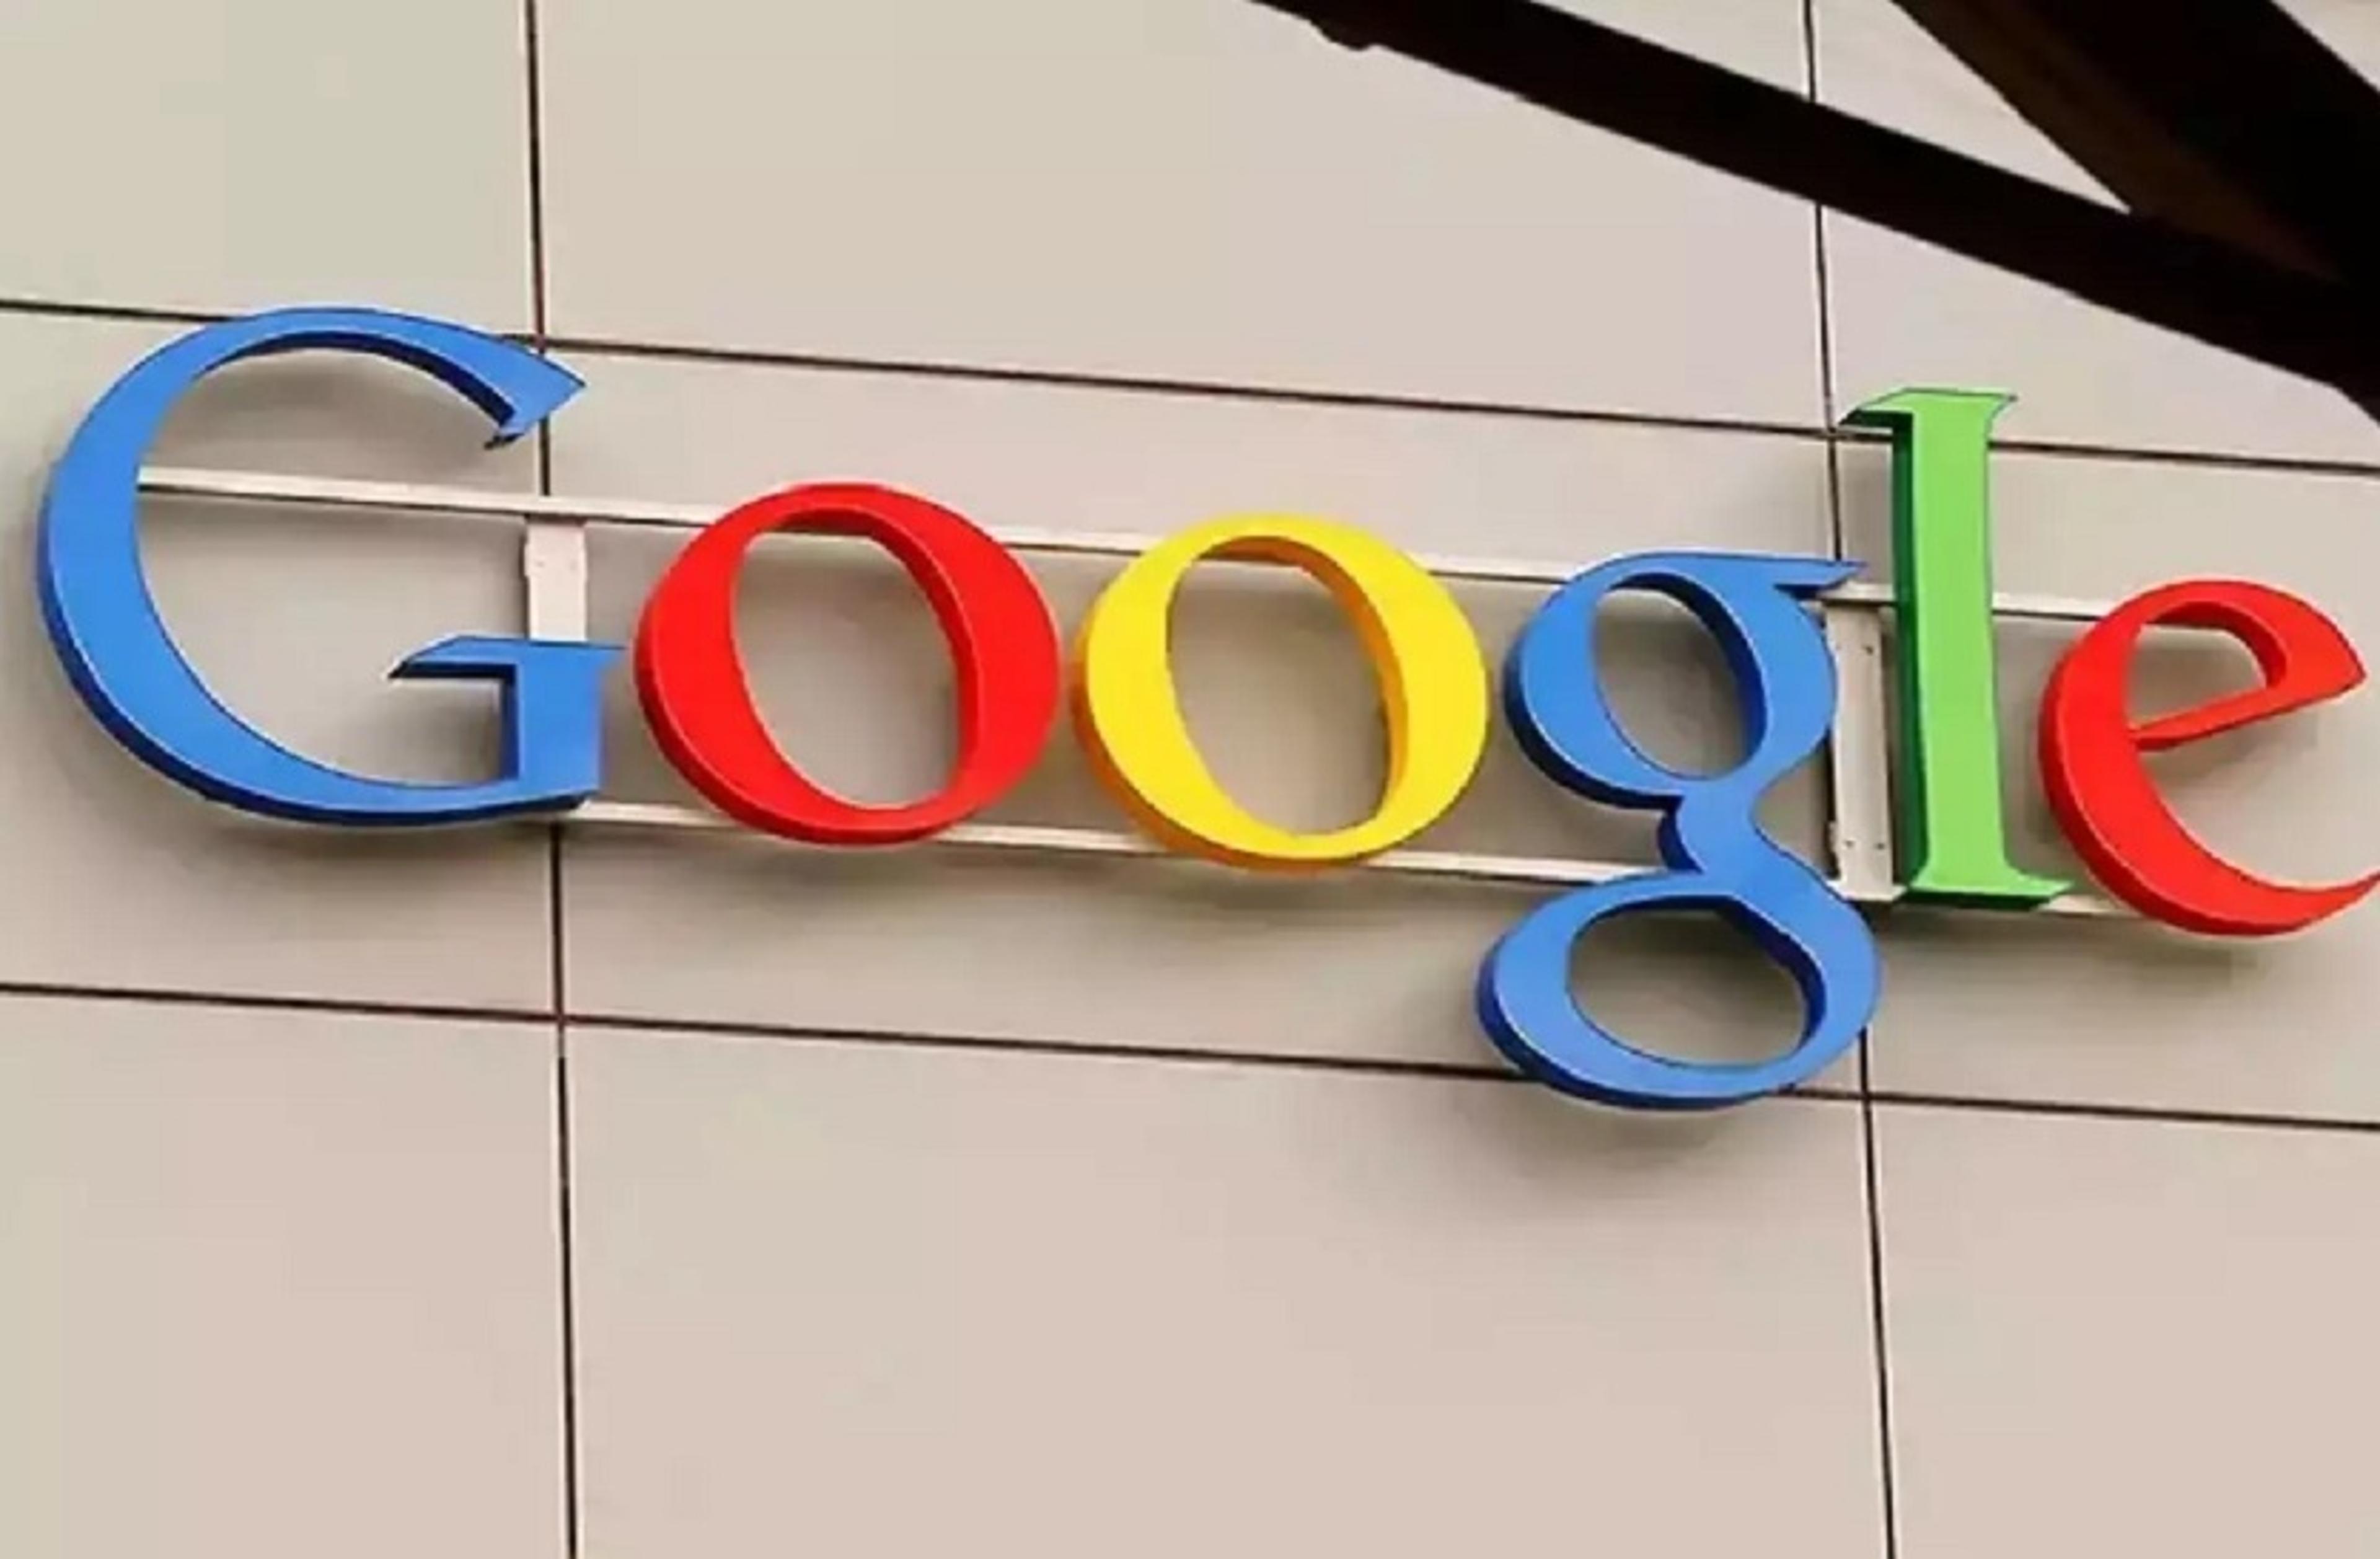 विज्ञापन की आड़ में फर्जीवाड़ा करने वालों पर गूगल का एक्शन, 1.2 करोड़ अकाउंट
ब्लॉक